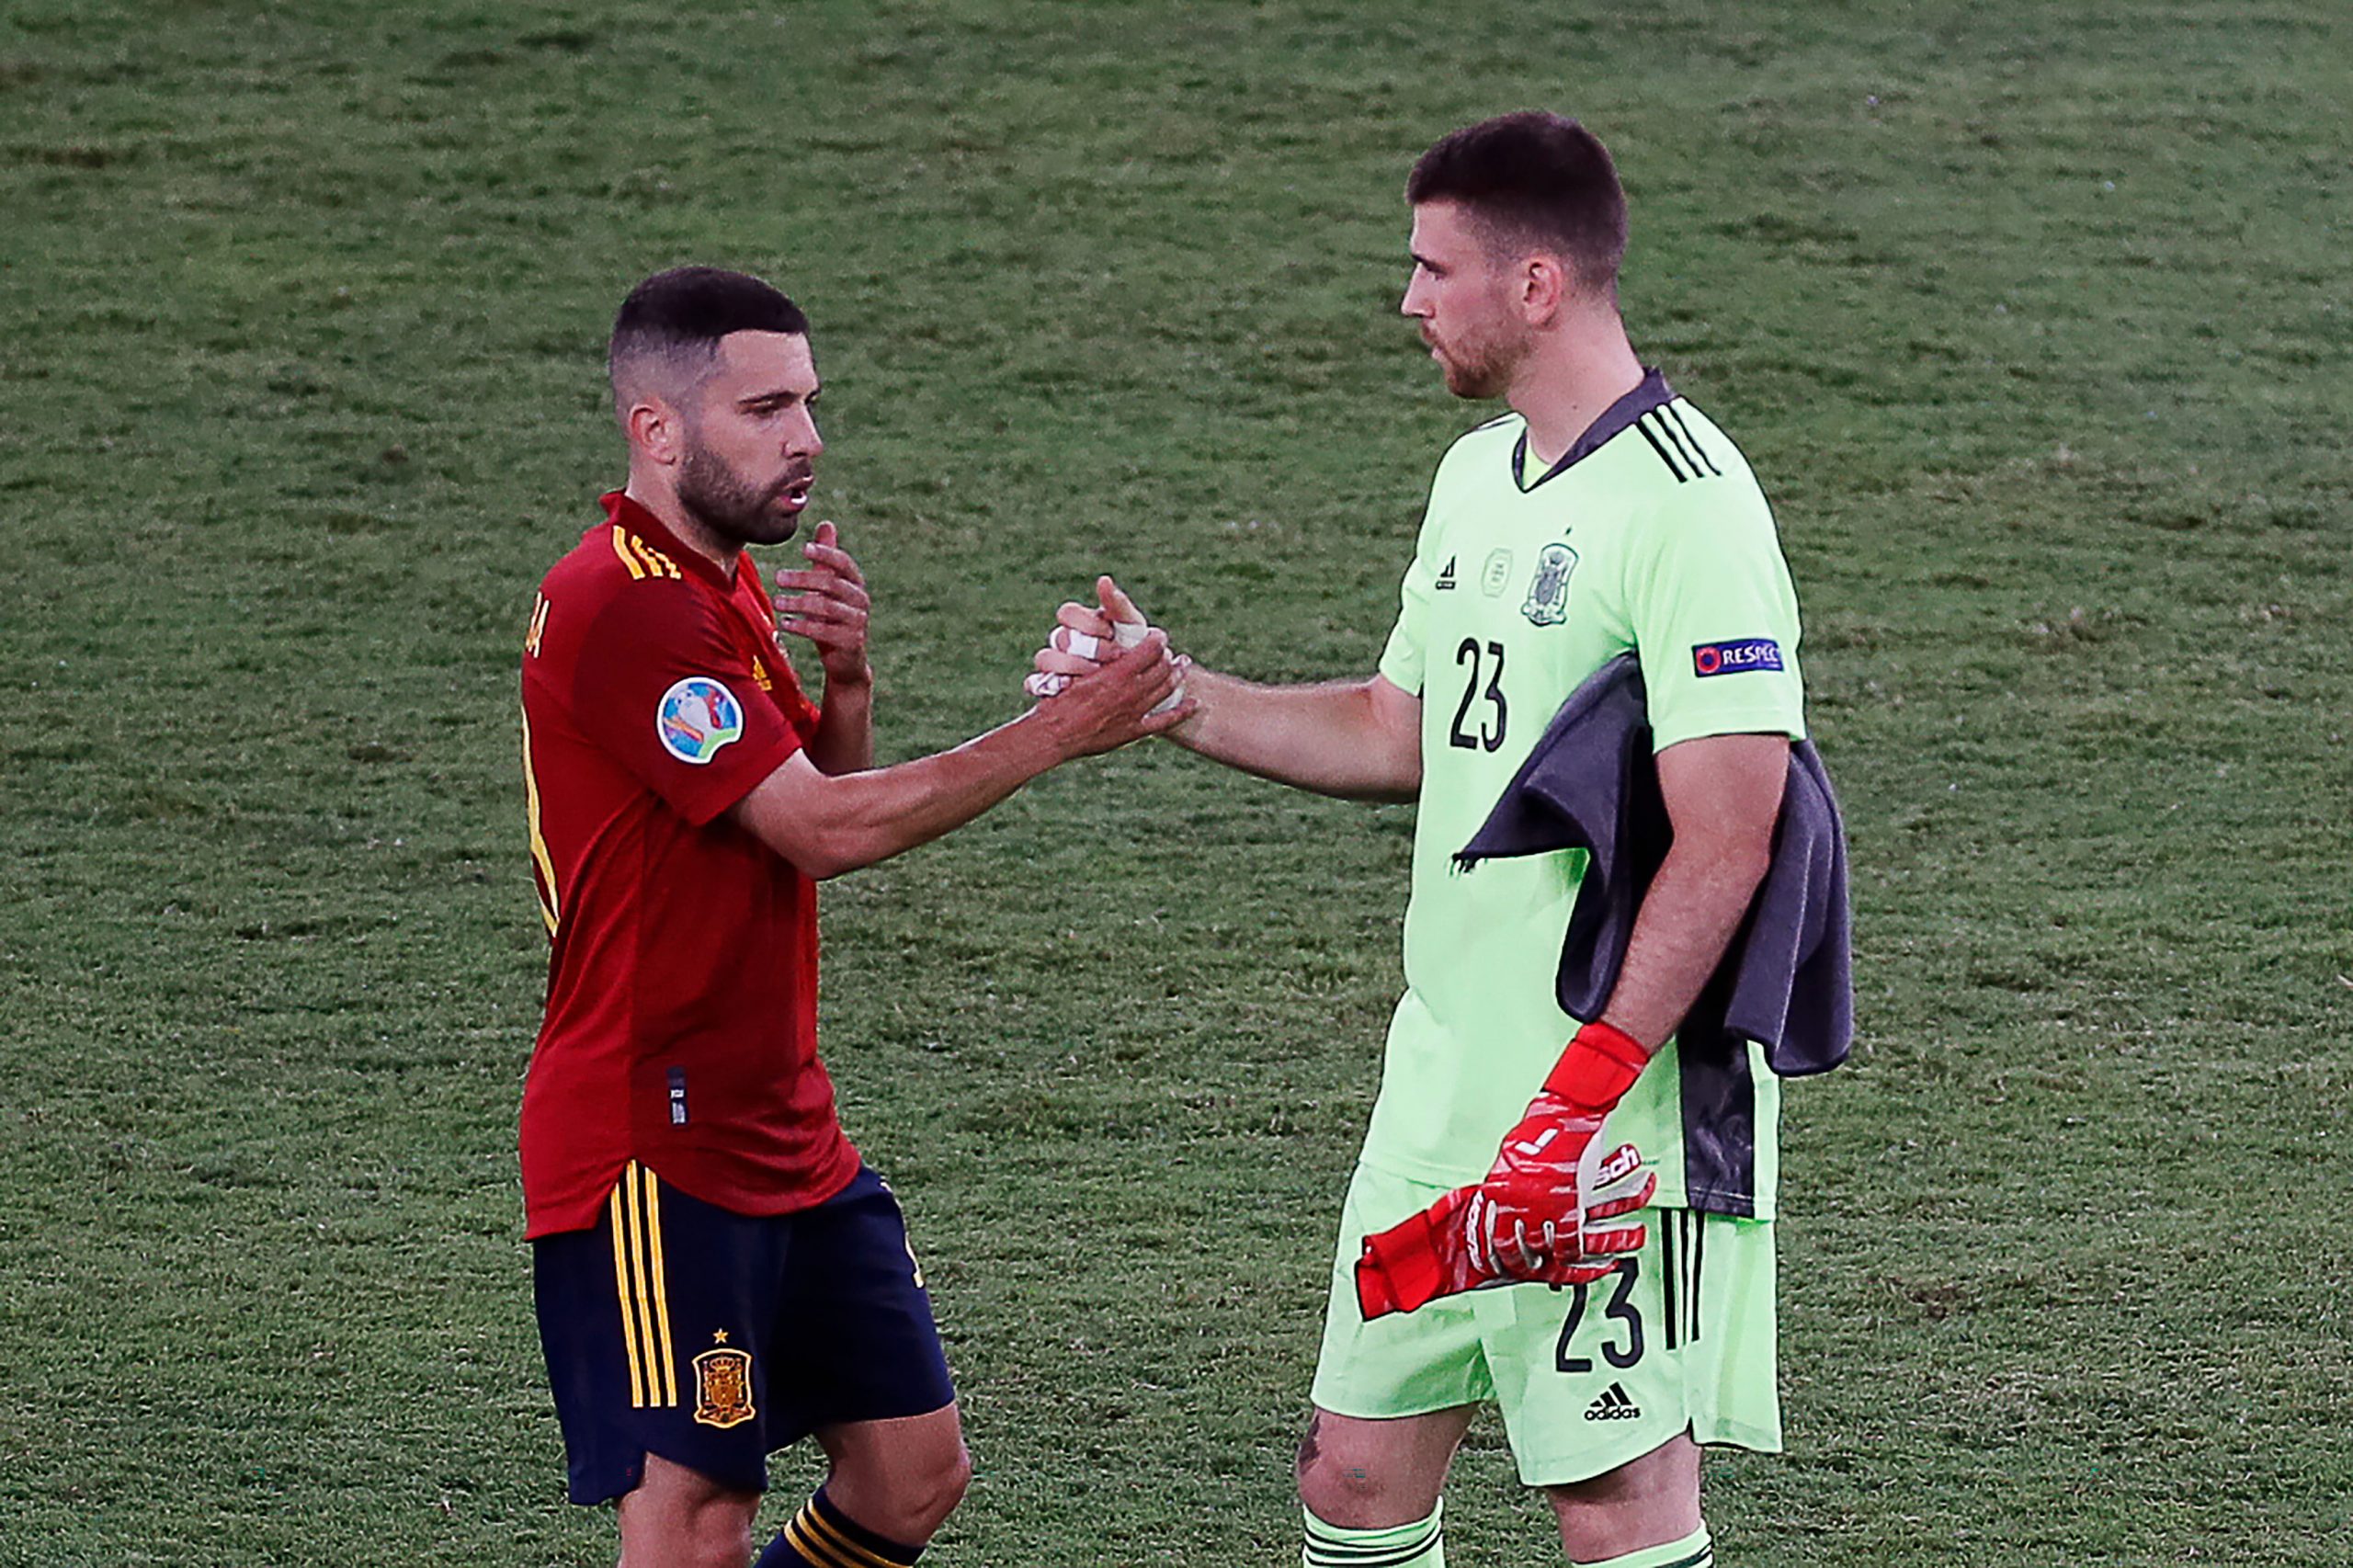 Euro 2020: Jordi Alba backs Spain to deliver in pressure game against Slovakia